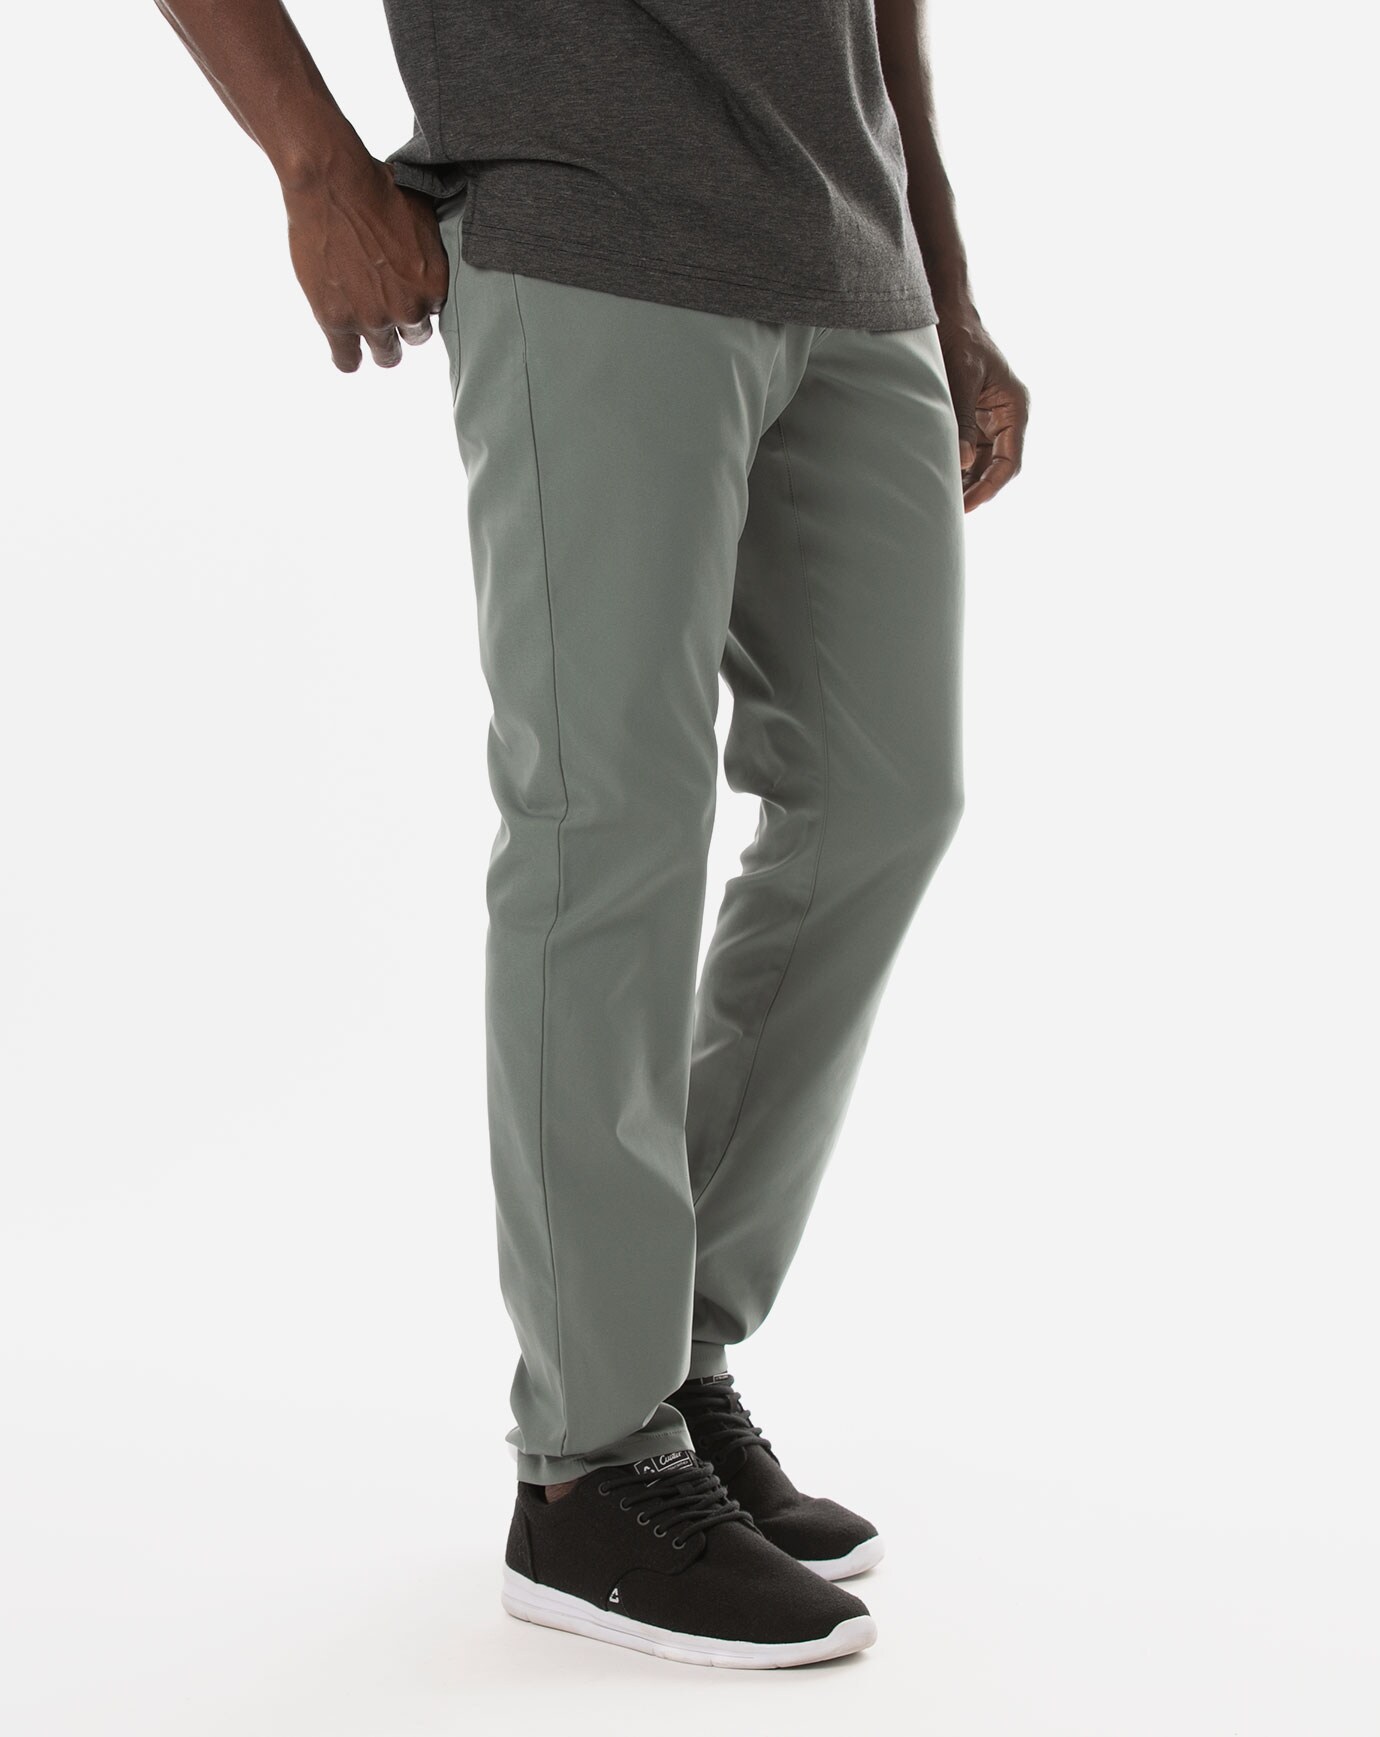 discount 84% Green 48                  EU MEN FASHION Trousers Straight Easy Wear Chino trouser 